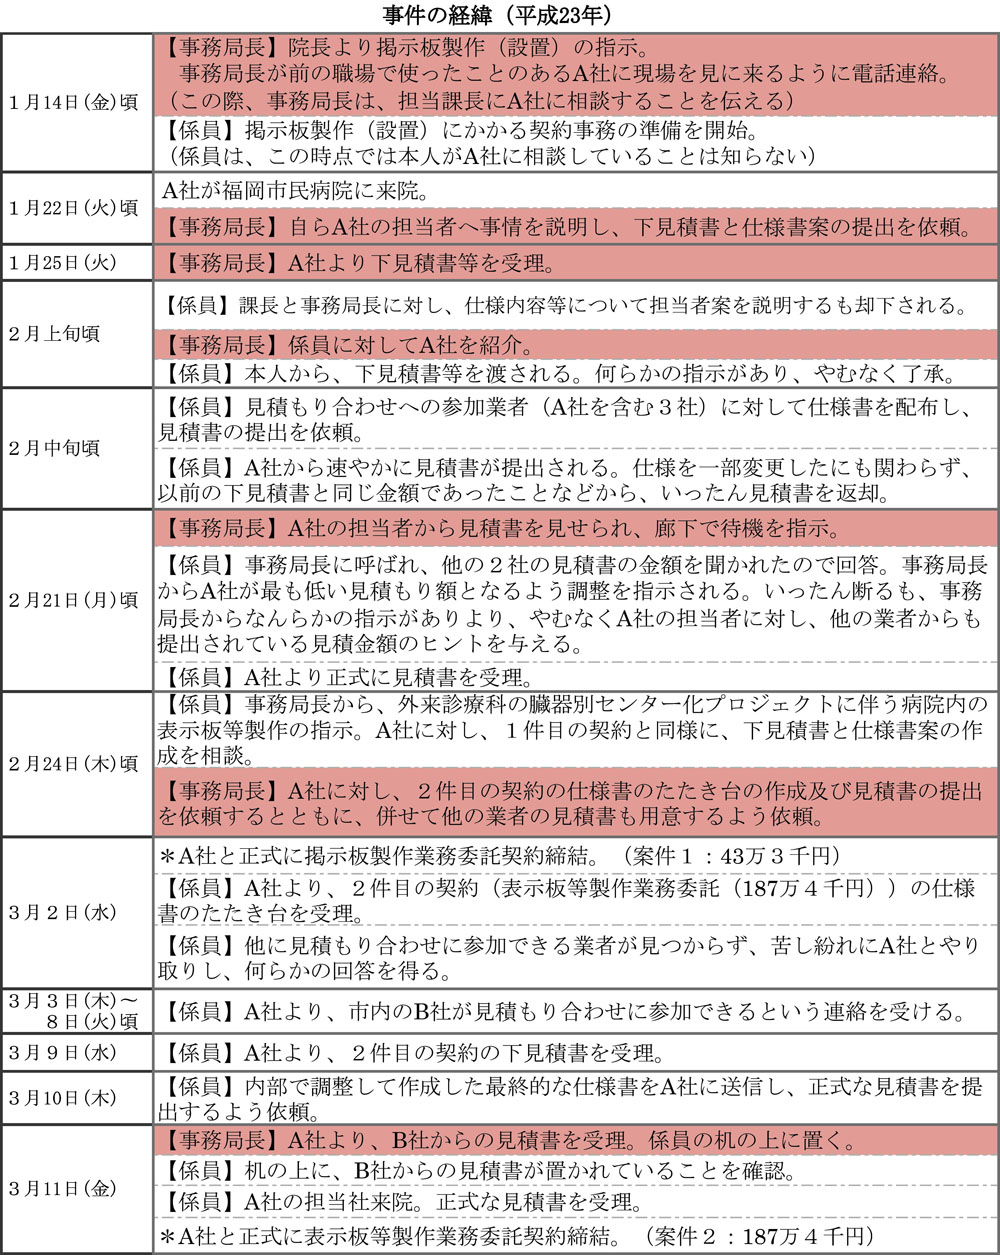 http://hunter-investigate.jp/news/2015/12/16/20151216_h02-01.jpg